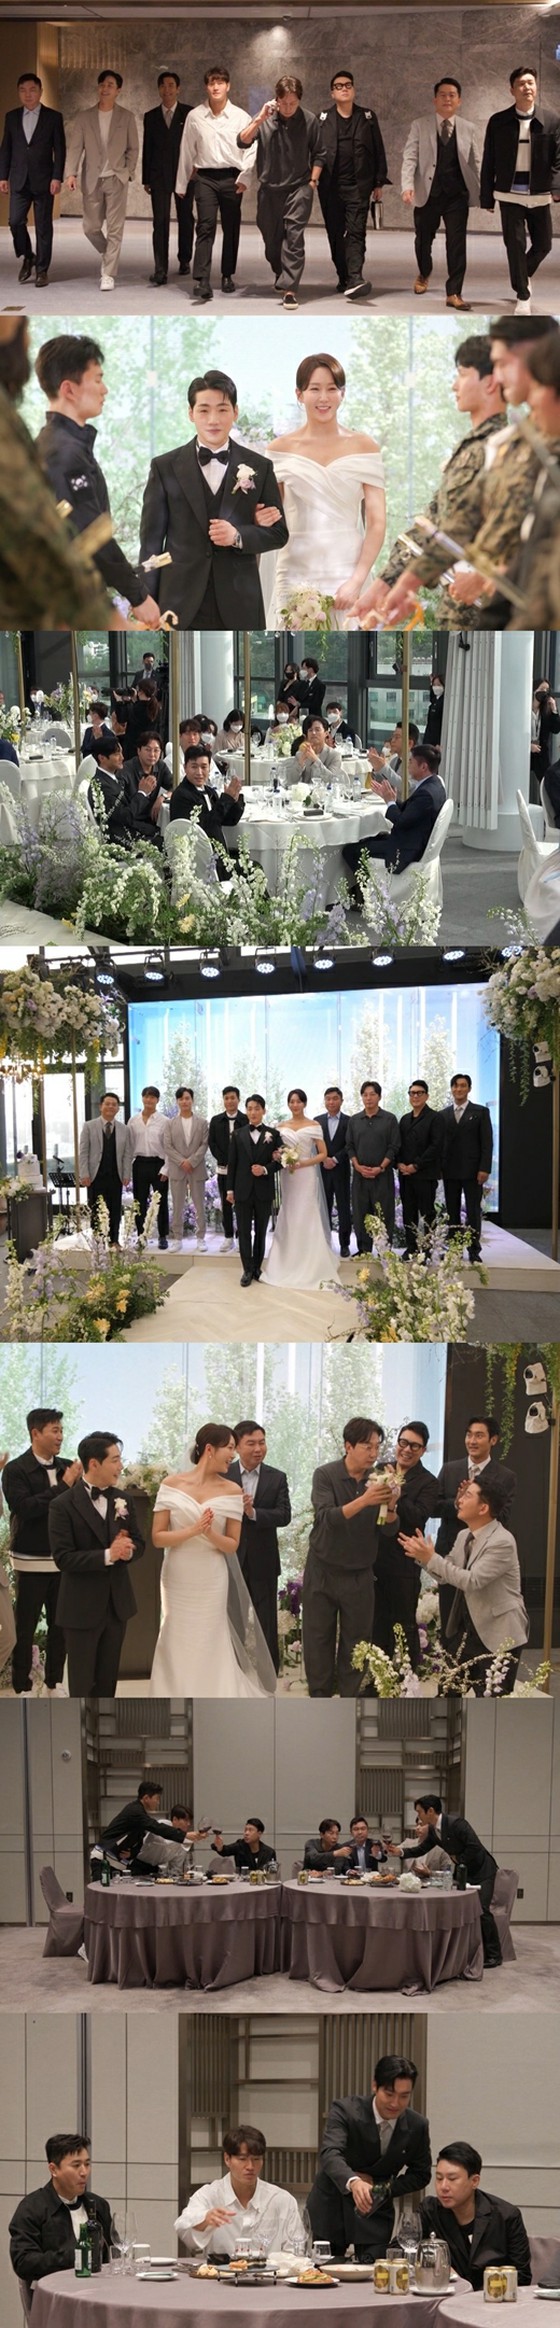 Park Gun & Han Young Kim JUNHO, yang menerima buket di pernikahan, bukan?